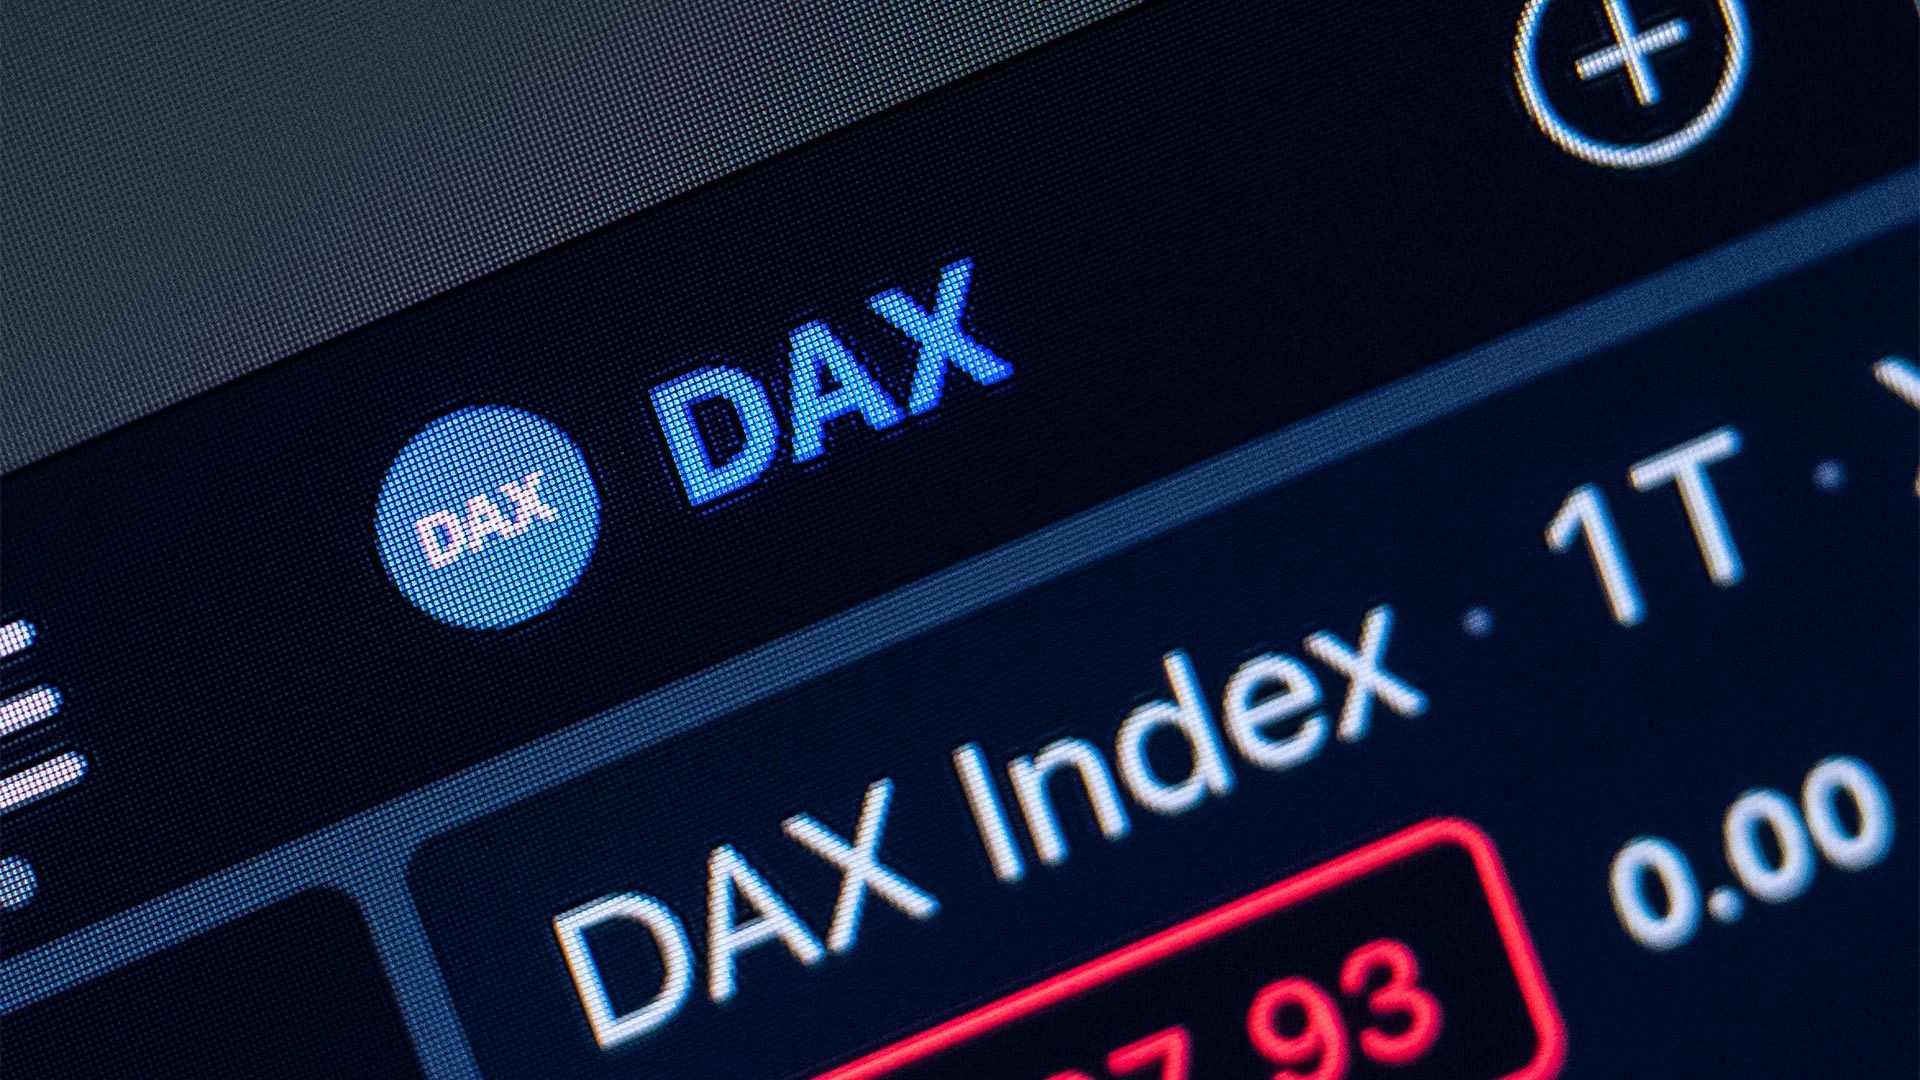 Índice por encima de los 15.100 puntos: el índice DAX no muestra debilidad